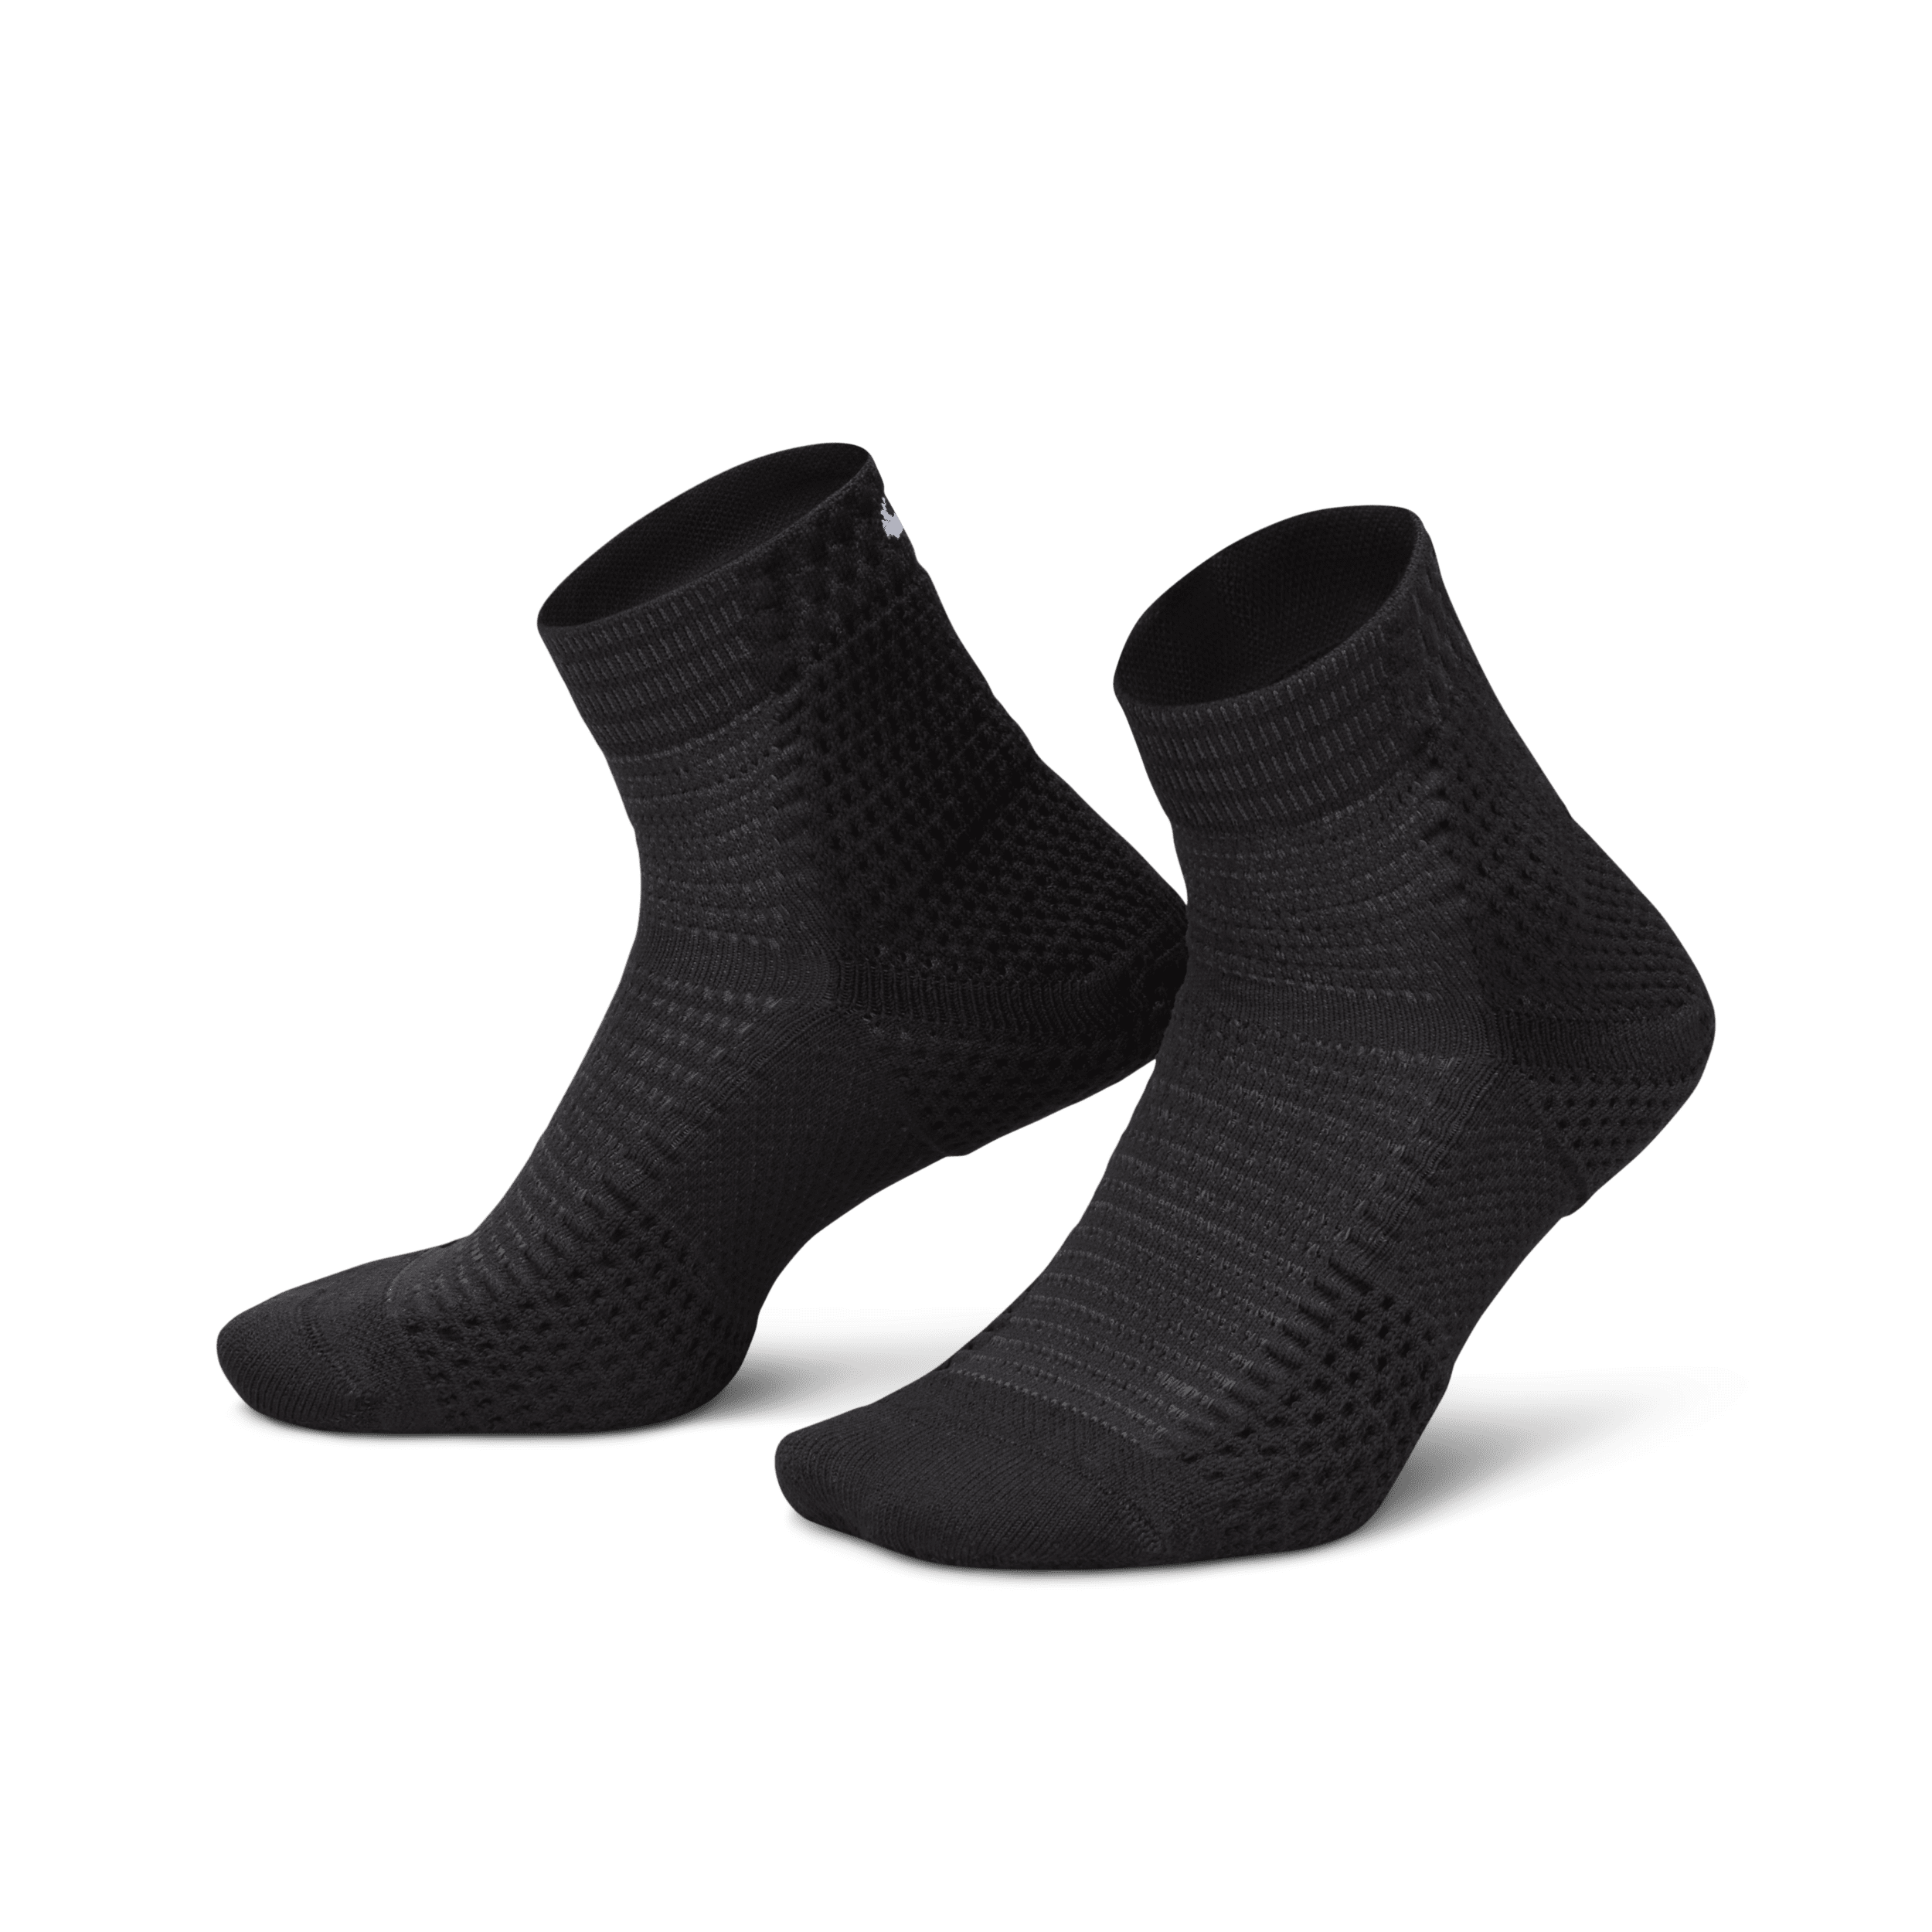 Calze ammortizzate alla caviglia Dri-FIT ADV Nike Unicorn (1 paio) - Nero